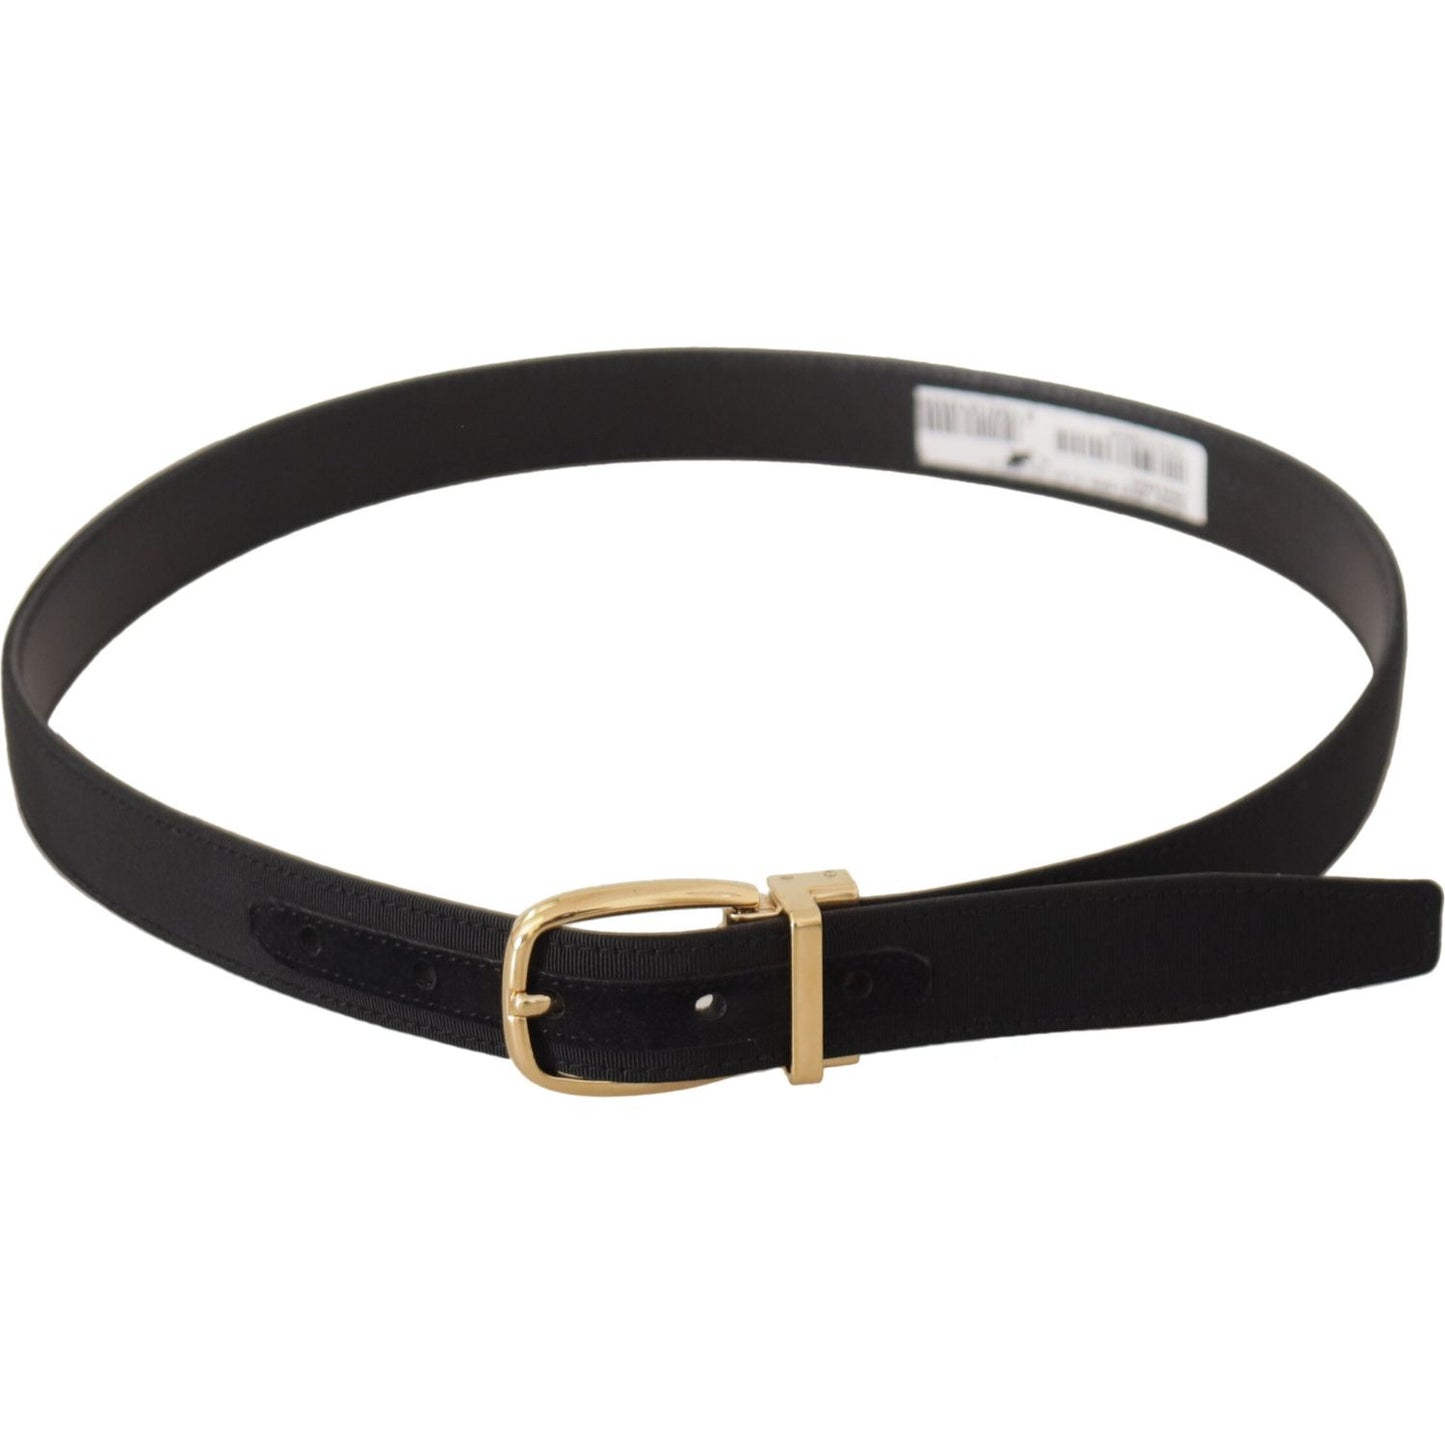 Dolce & Gabbana Elegant Black Leather Belt black-canvas-leather-gold-metal-buckle-belt